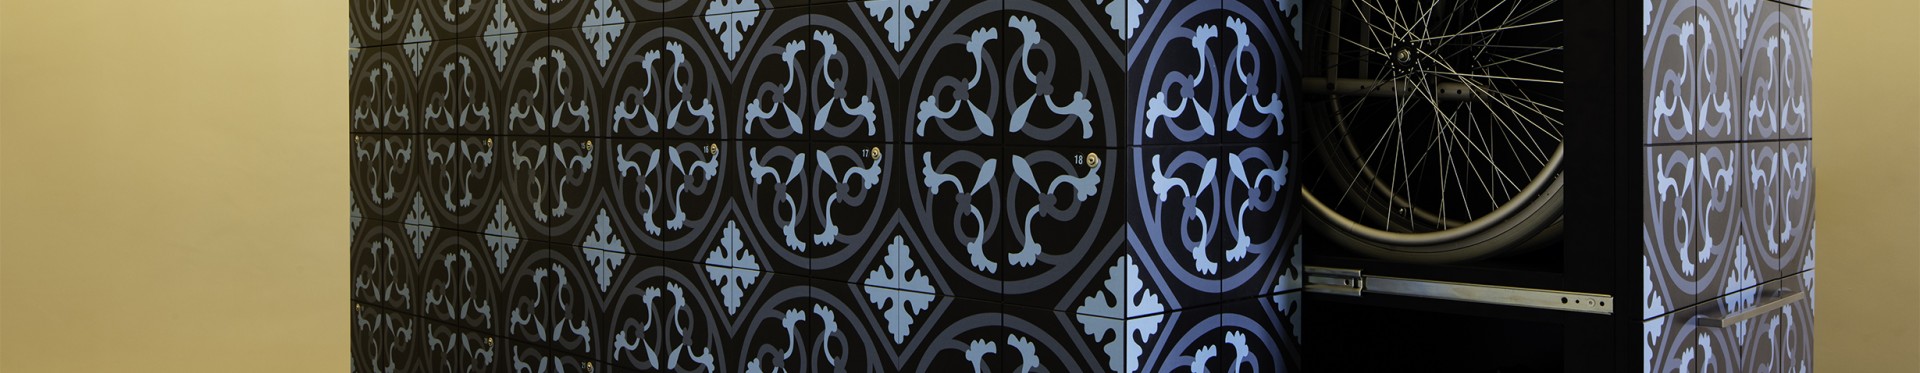 Le vestiaire et ses fauteuils pliants. Le motif décoratif est celui des carreaux ciment historiques.